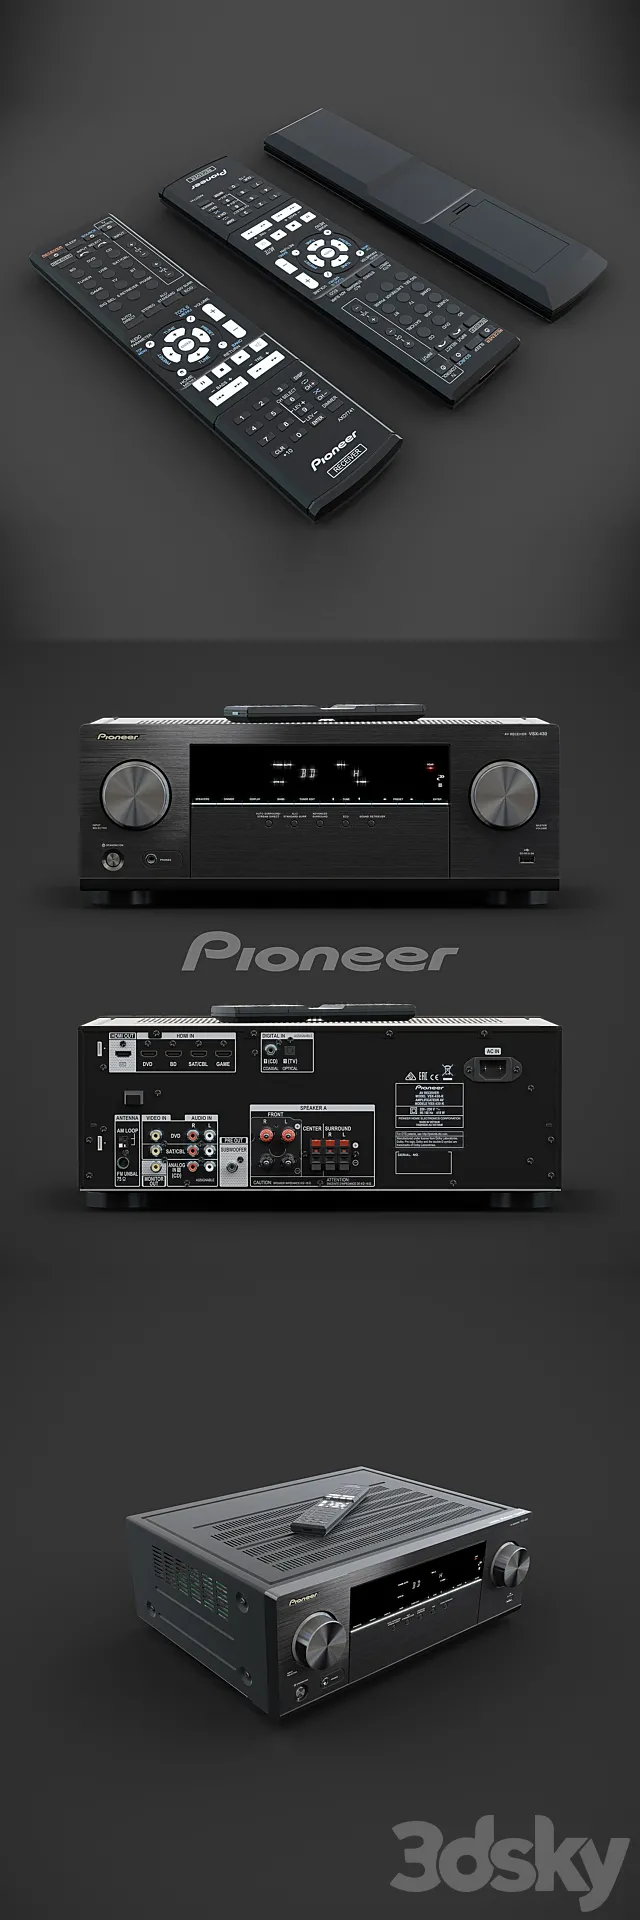 Pioneer AV-receiver VSX-430-K 3DSMax File